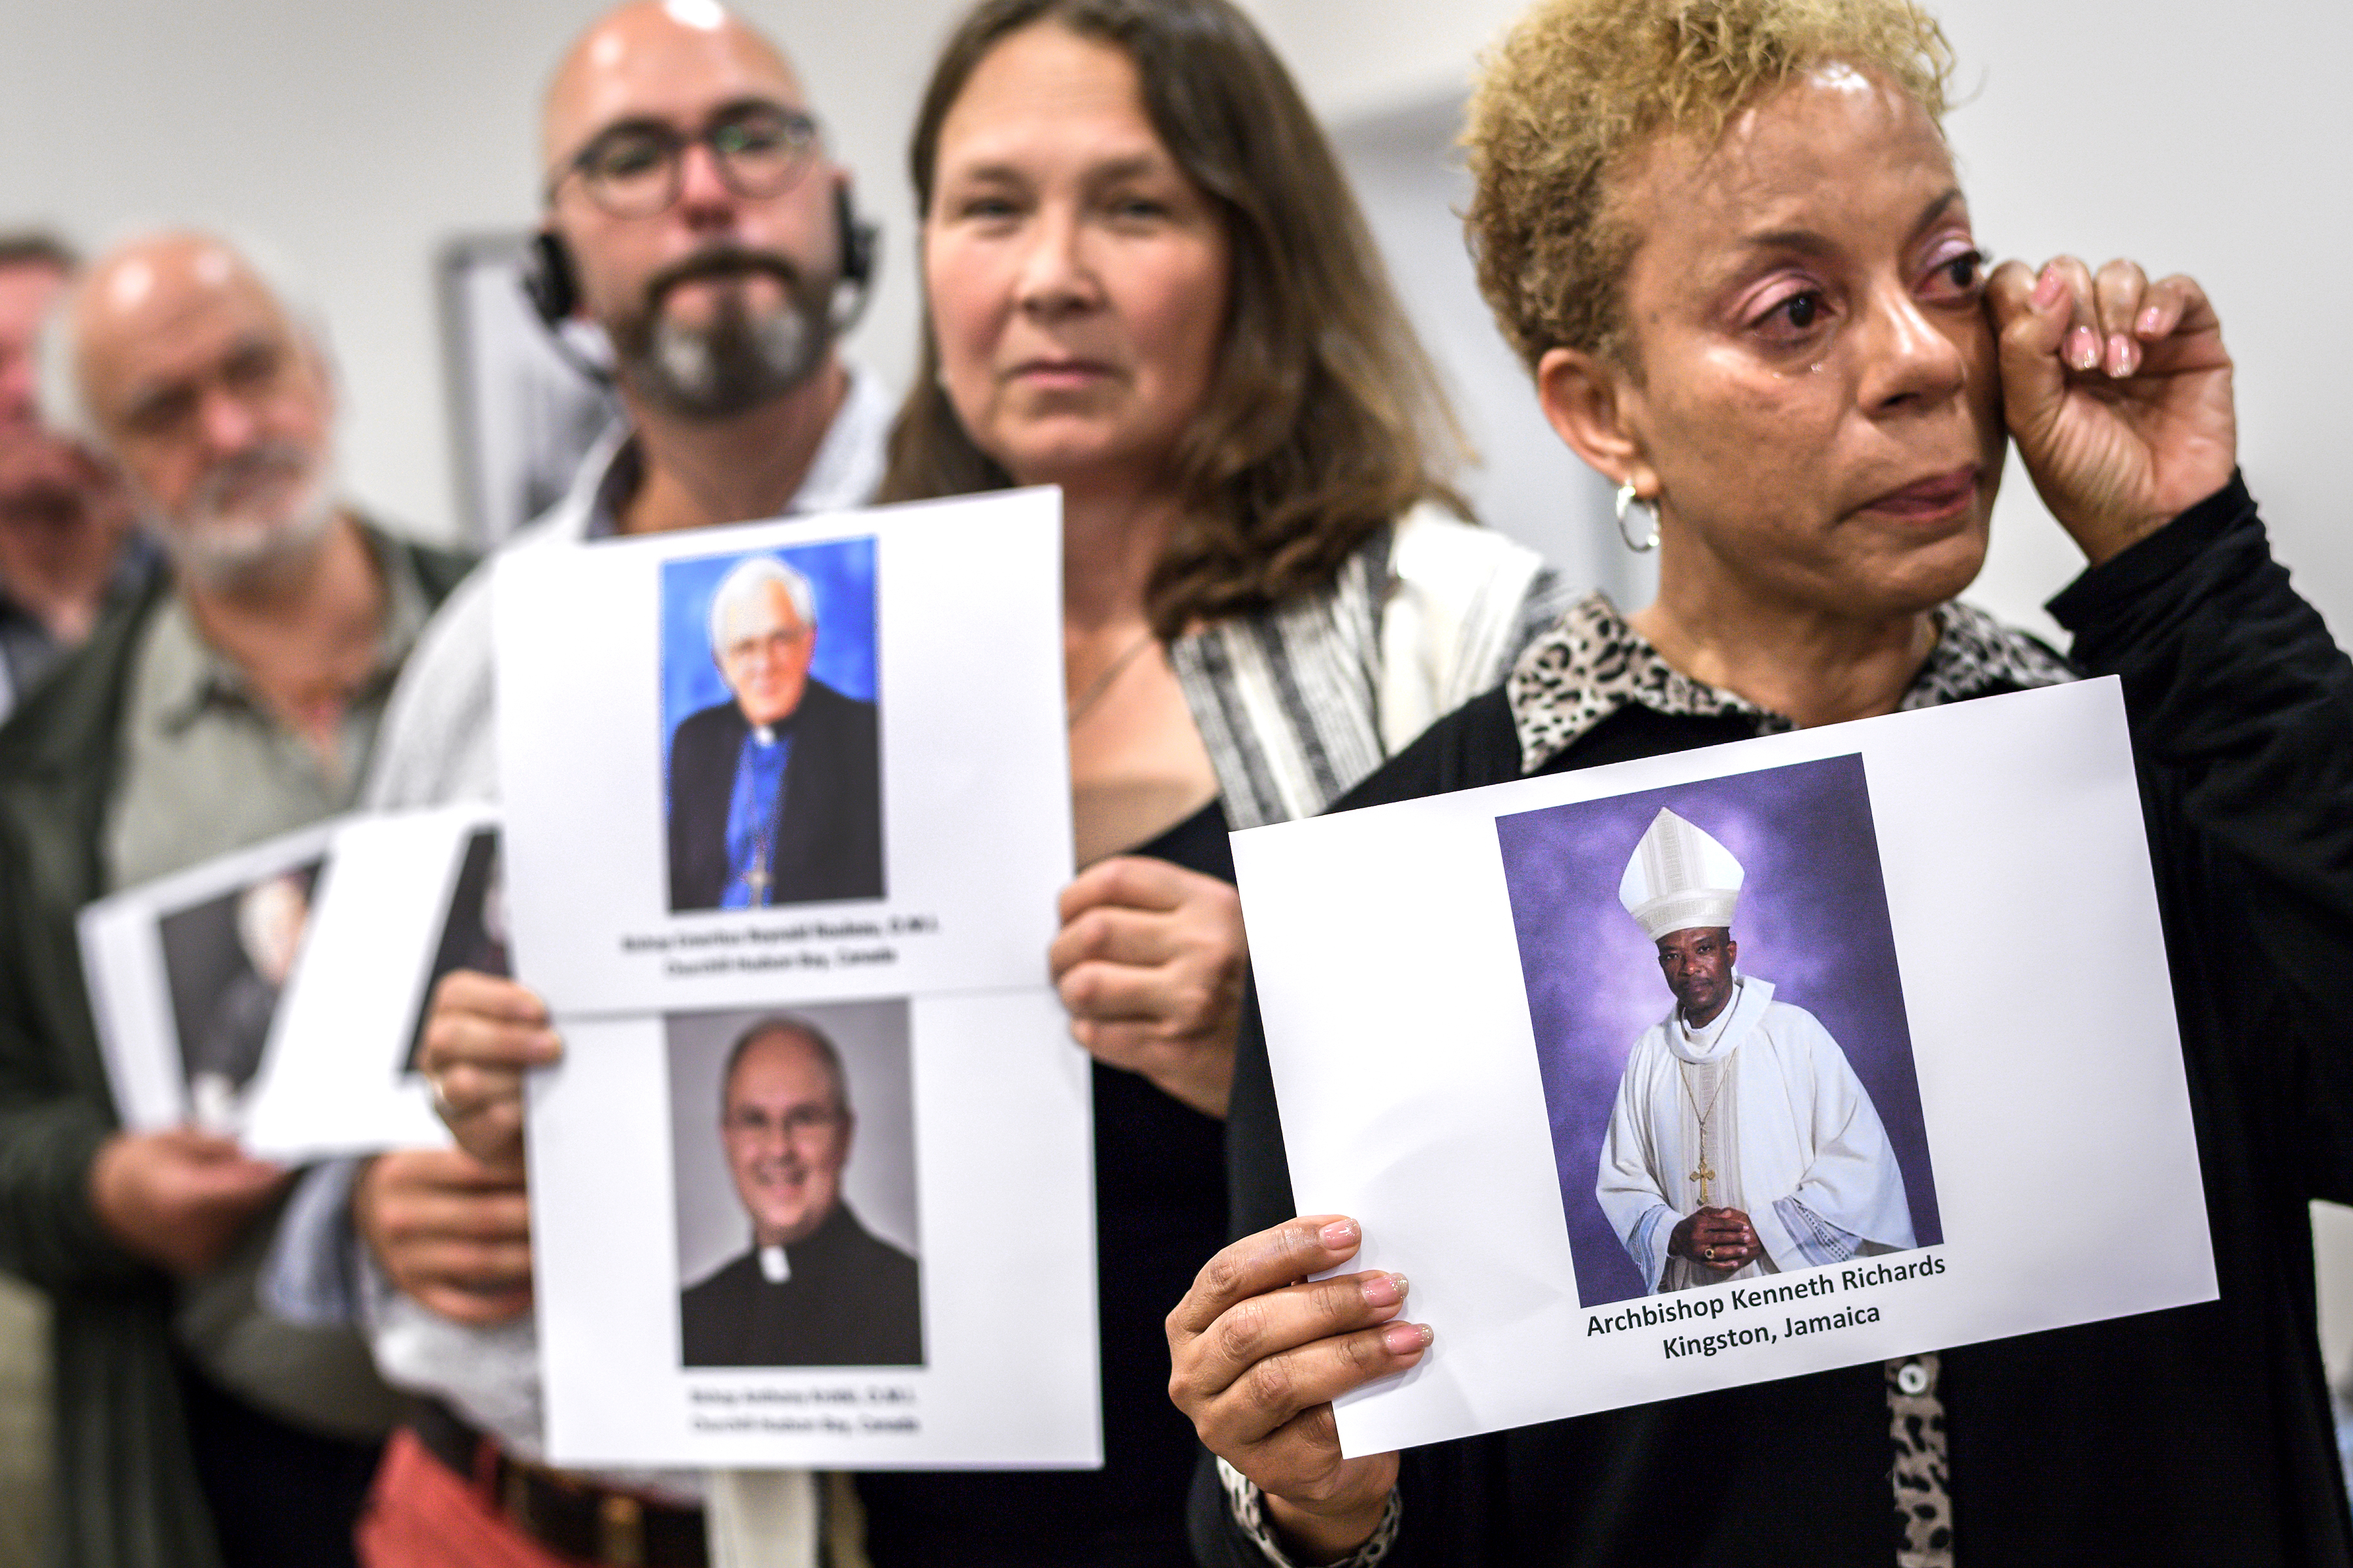 Áldozatok és aktivisták az Ending Clergy Abuse nevű nemzetközi szervezet sajtótájékoztatóján Genfben, 2018-ban